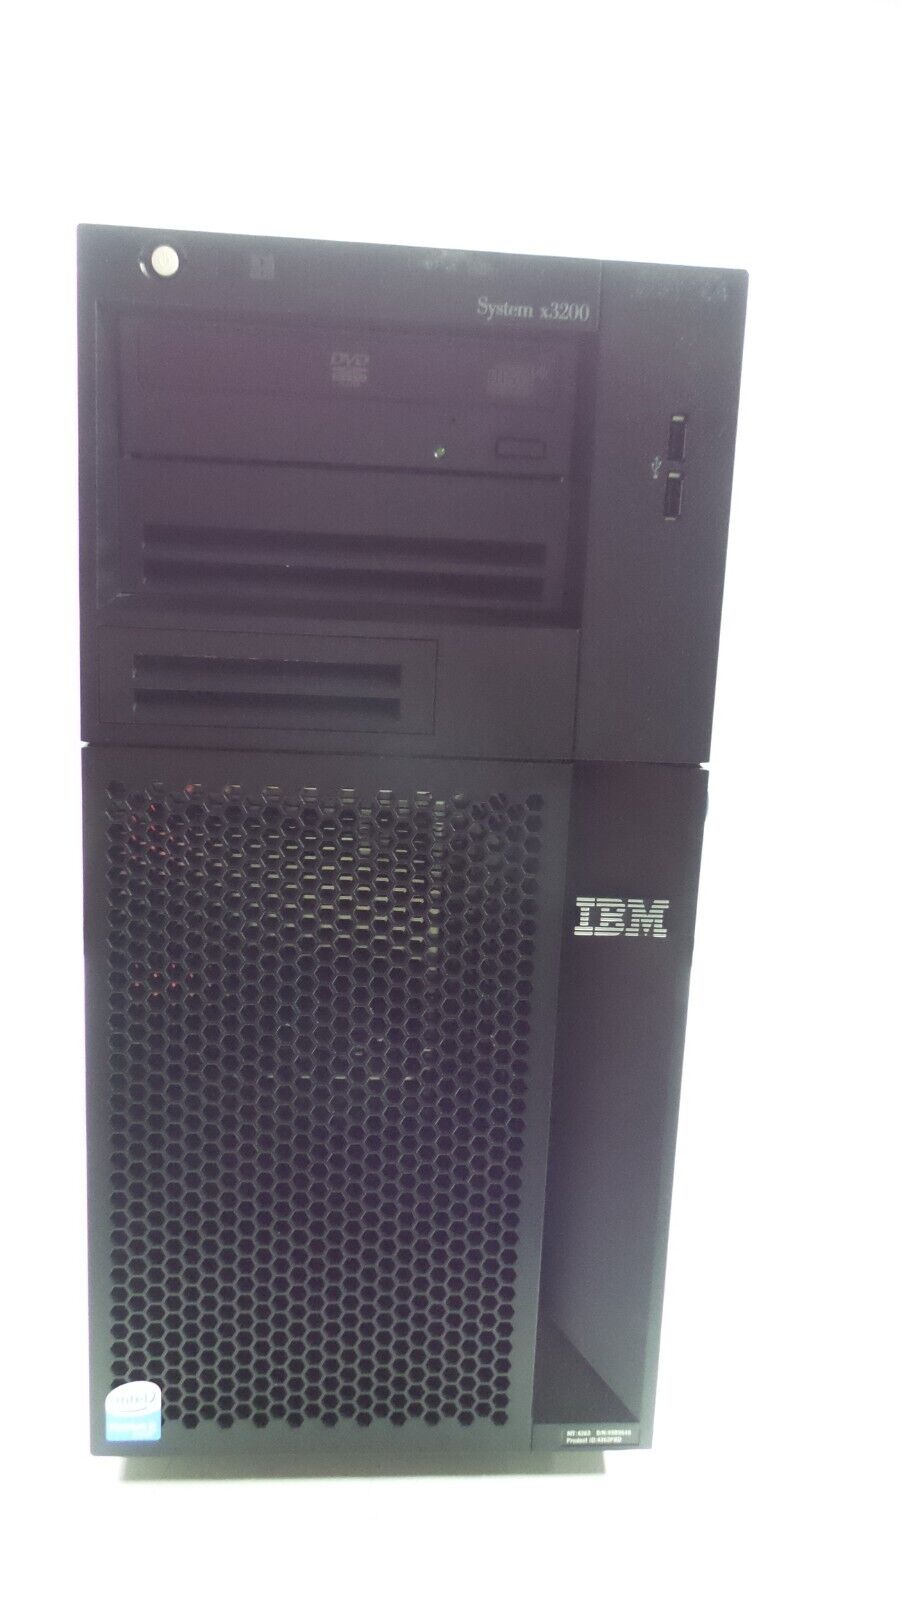 IBM SYSTEM x3200 Pentium D-915 2.80GHz 6GB DDR2 RAM 2x160GB HDD DVD-RW, No OS